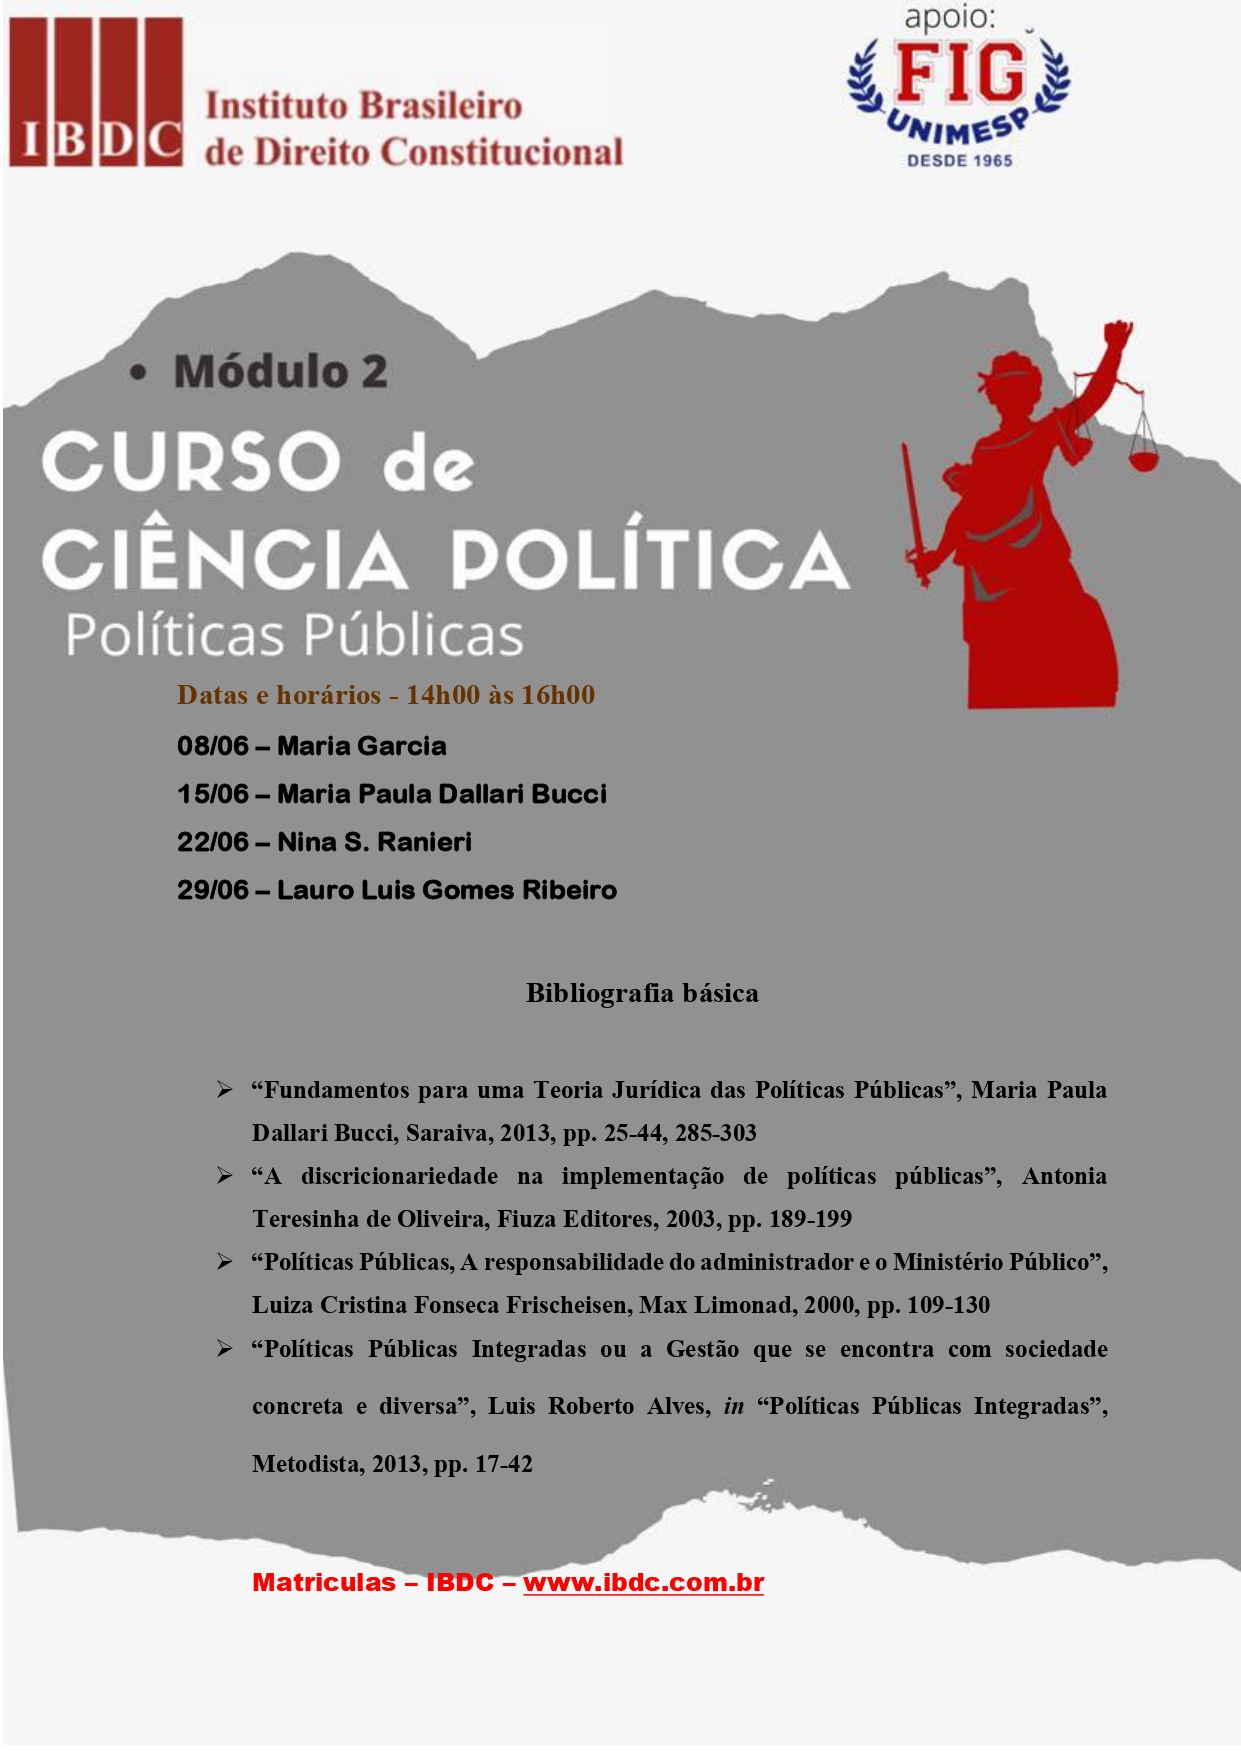 CURSO-DE-POLÍTICA-IBDC-MÓDULO-II-ssim (1)_page-0001.jpg